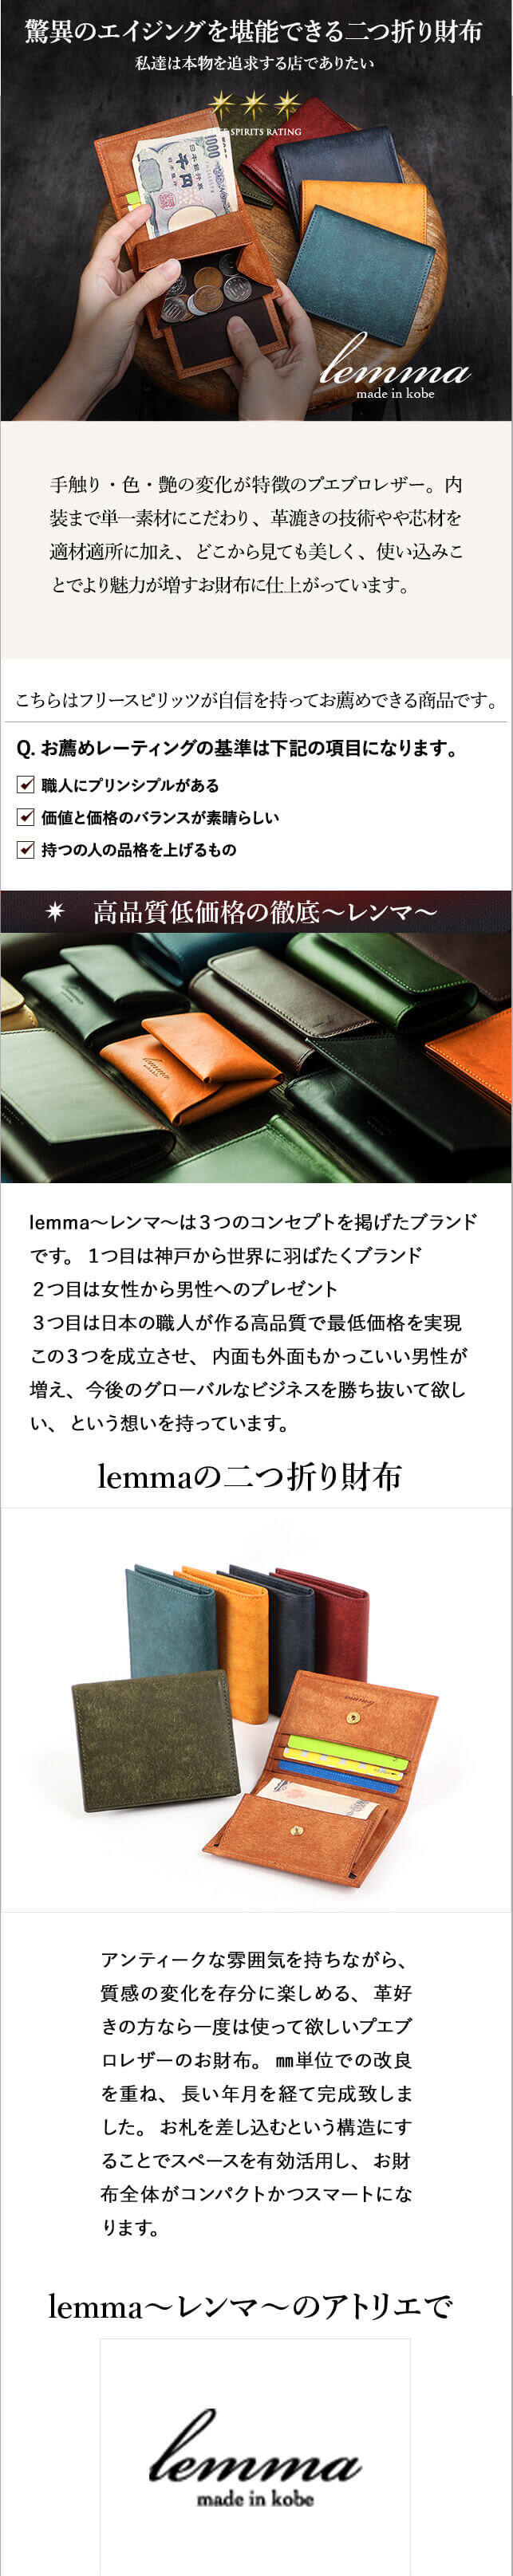 新品 レンマ マリスコ コンパクト lemma ペトローリオ 二つ折財布 人気